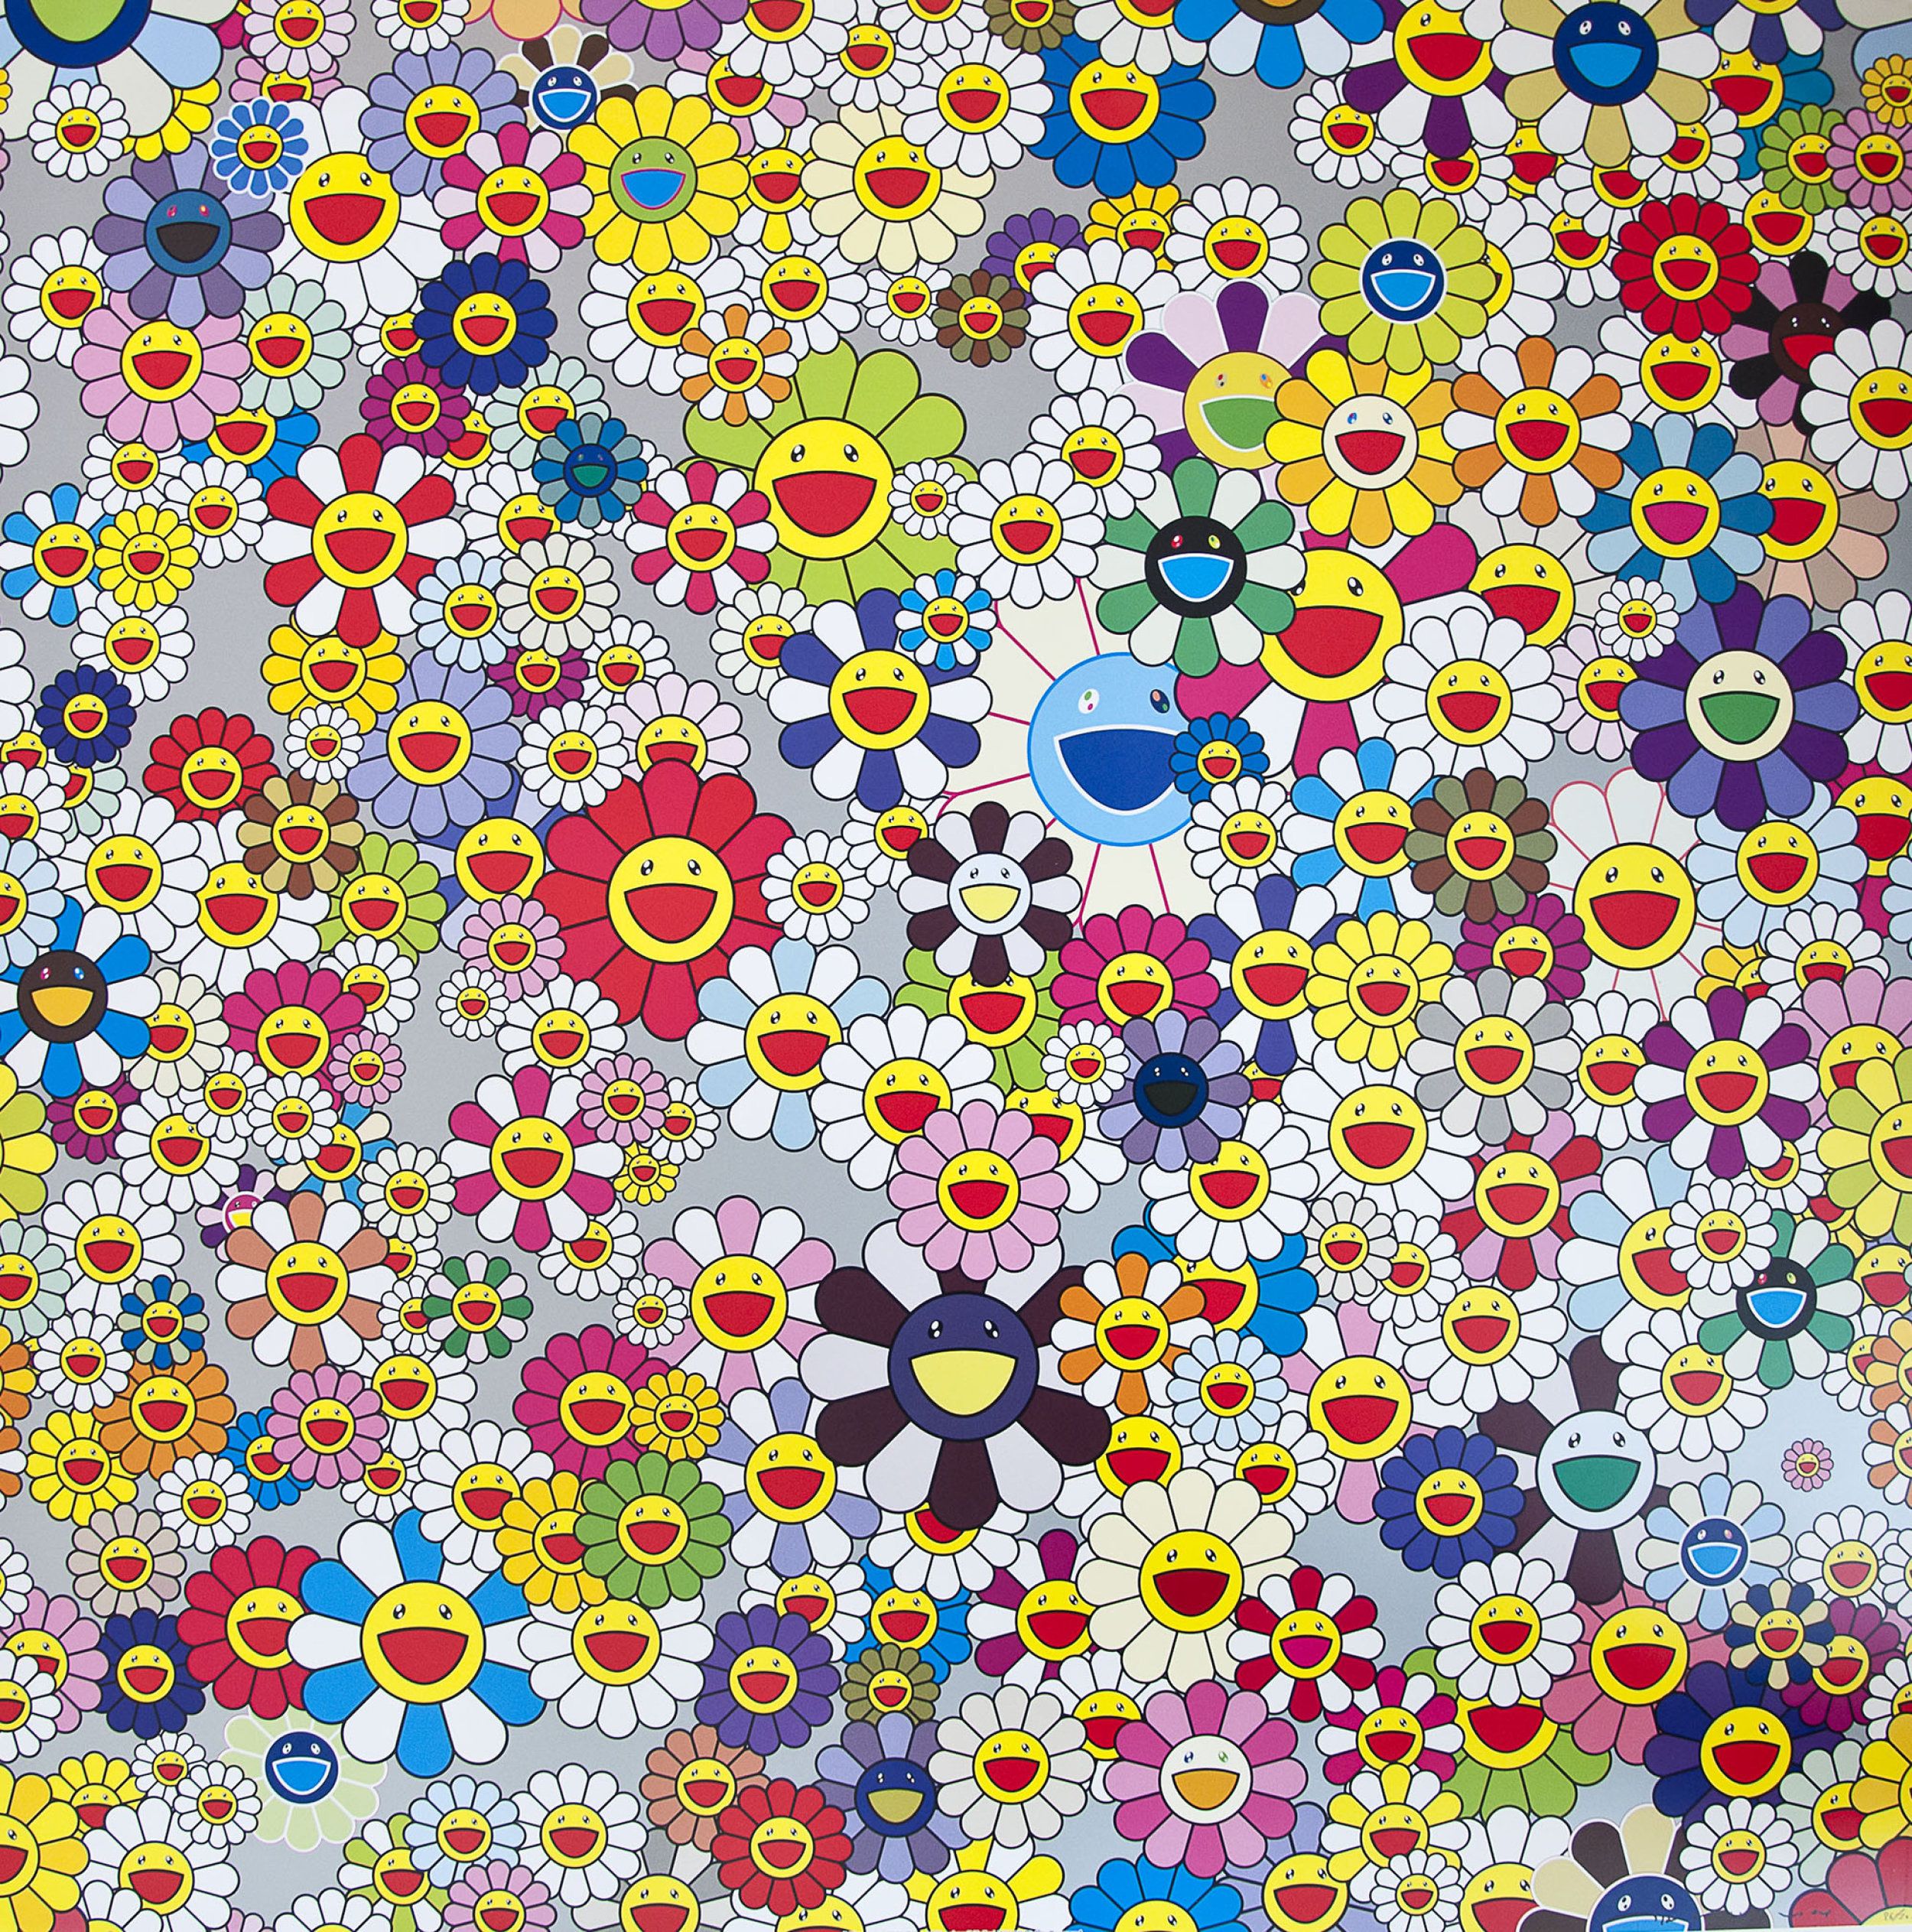 Takashi Murakami Wallpapers